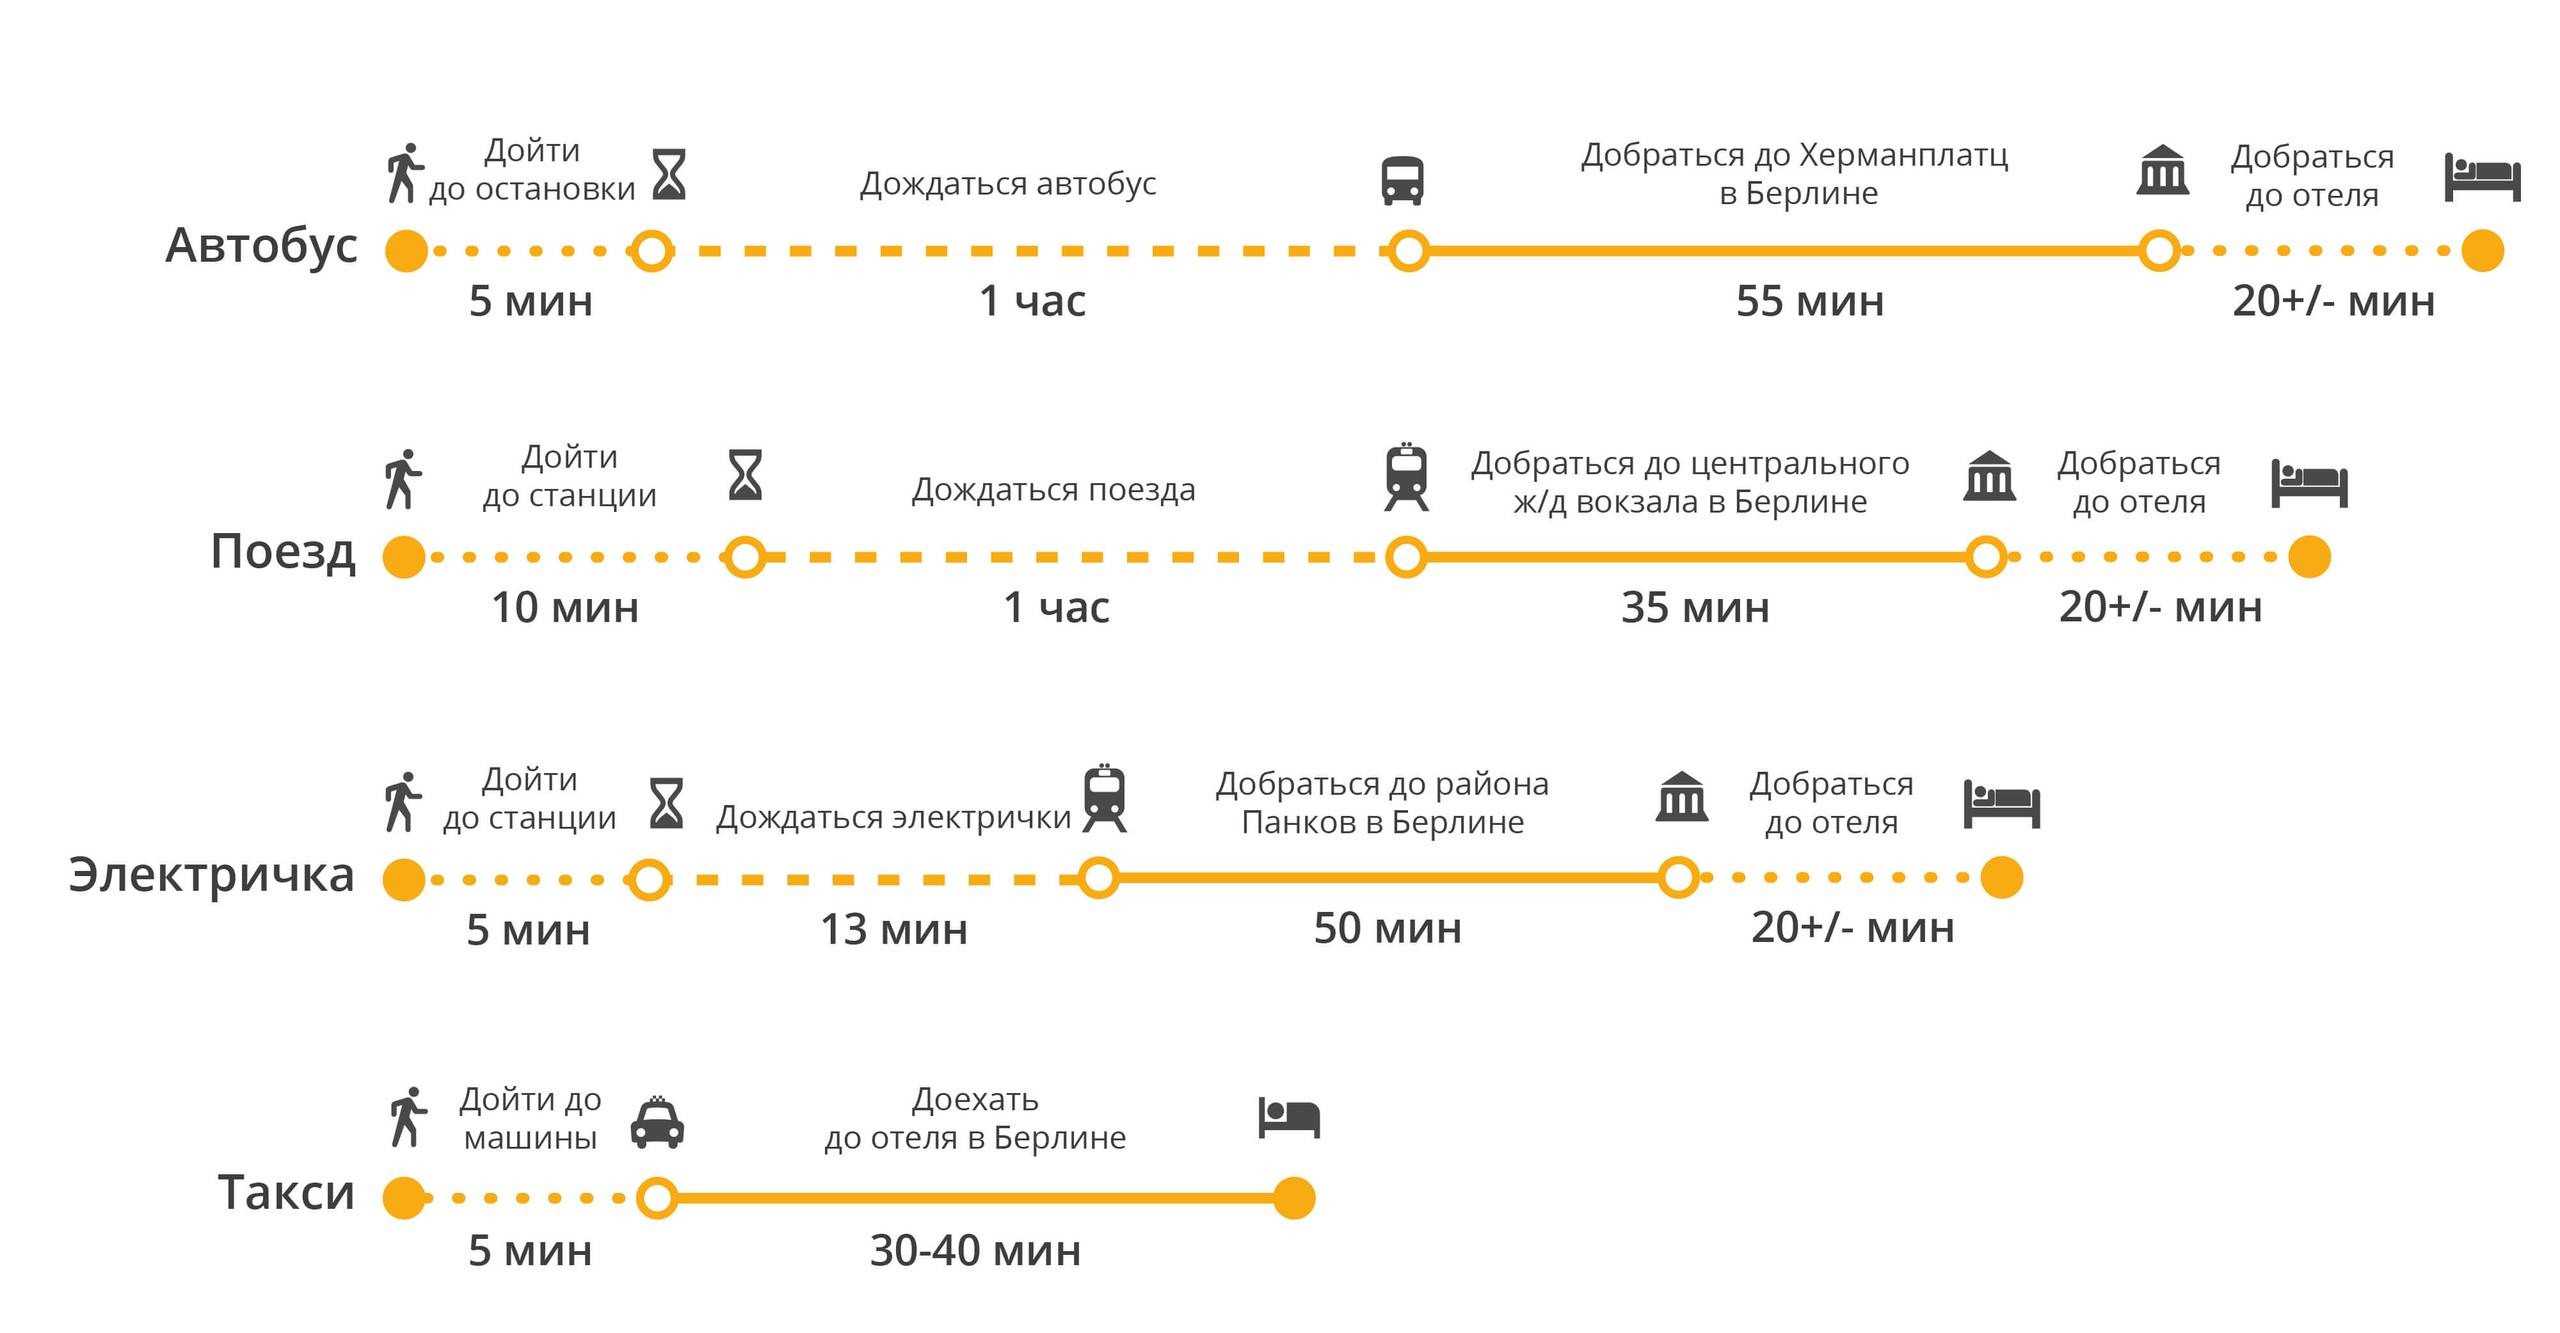 Общественный транспорт в париже 2021: метро, автобусы, rer. такси в париже, аренда авто и велосипеда. стоимость проезда, билеты